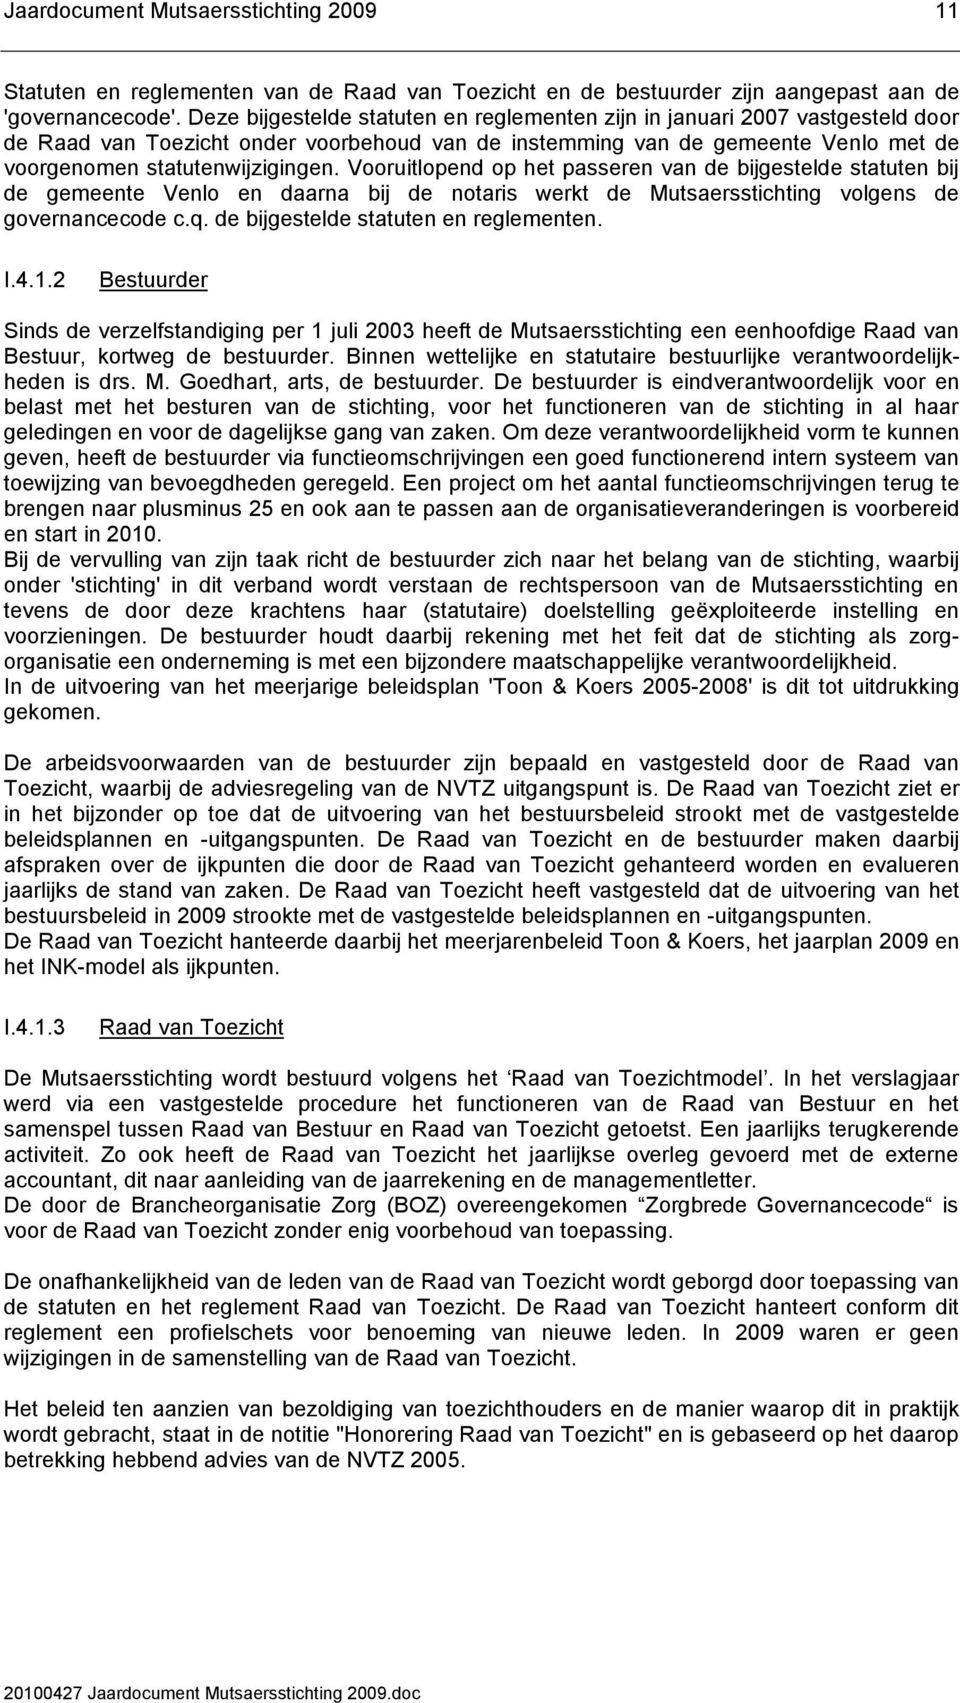 Vooruitlopend op het passeren van de bijgestelde statuten bij de gemeente Venlo en daarna bij de notaris werkt de Mutsaersstichting volgens de governancecode c.q.